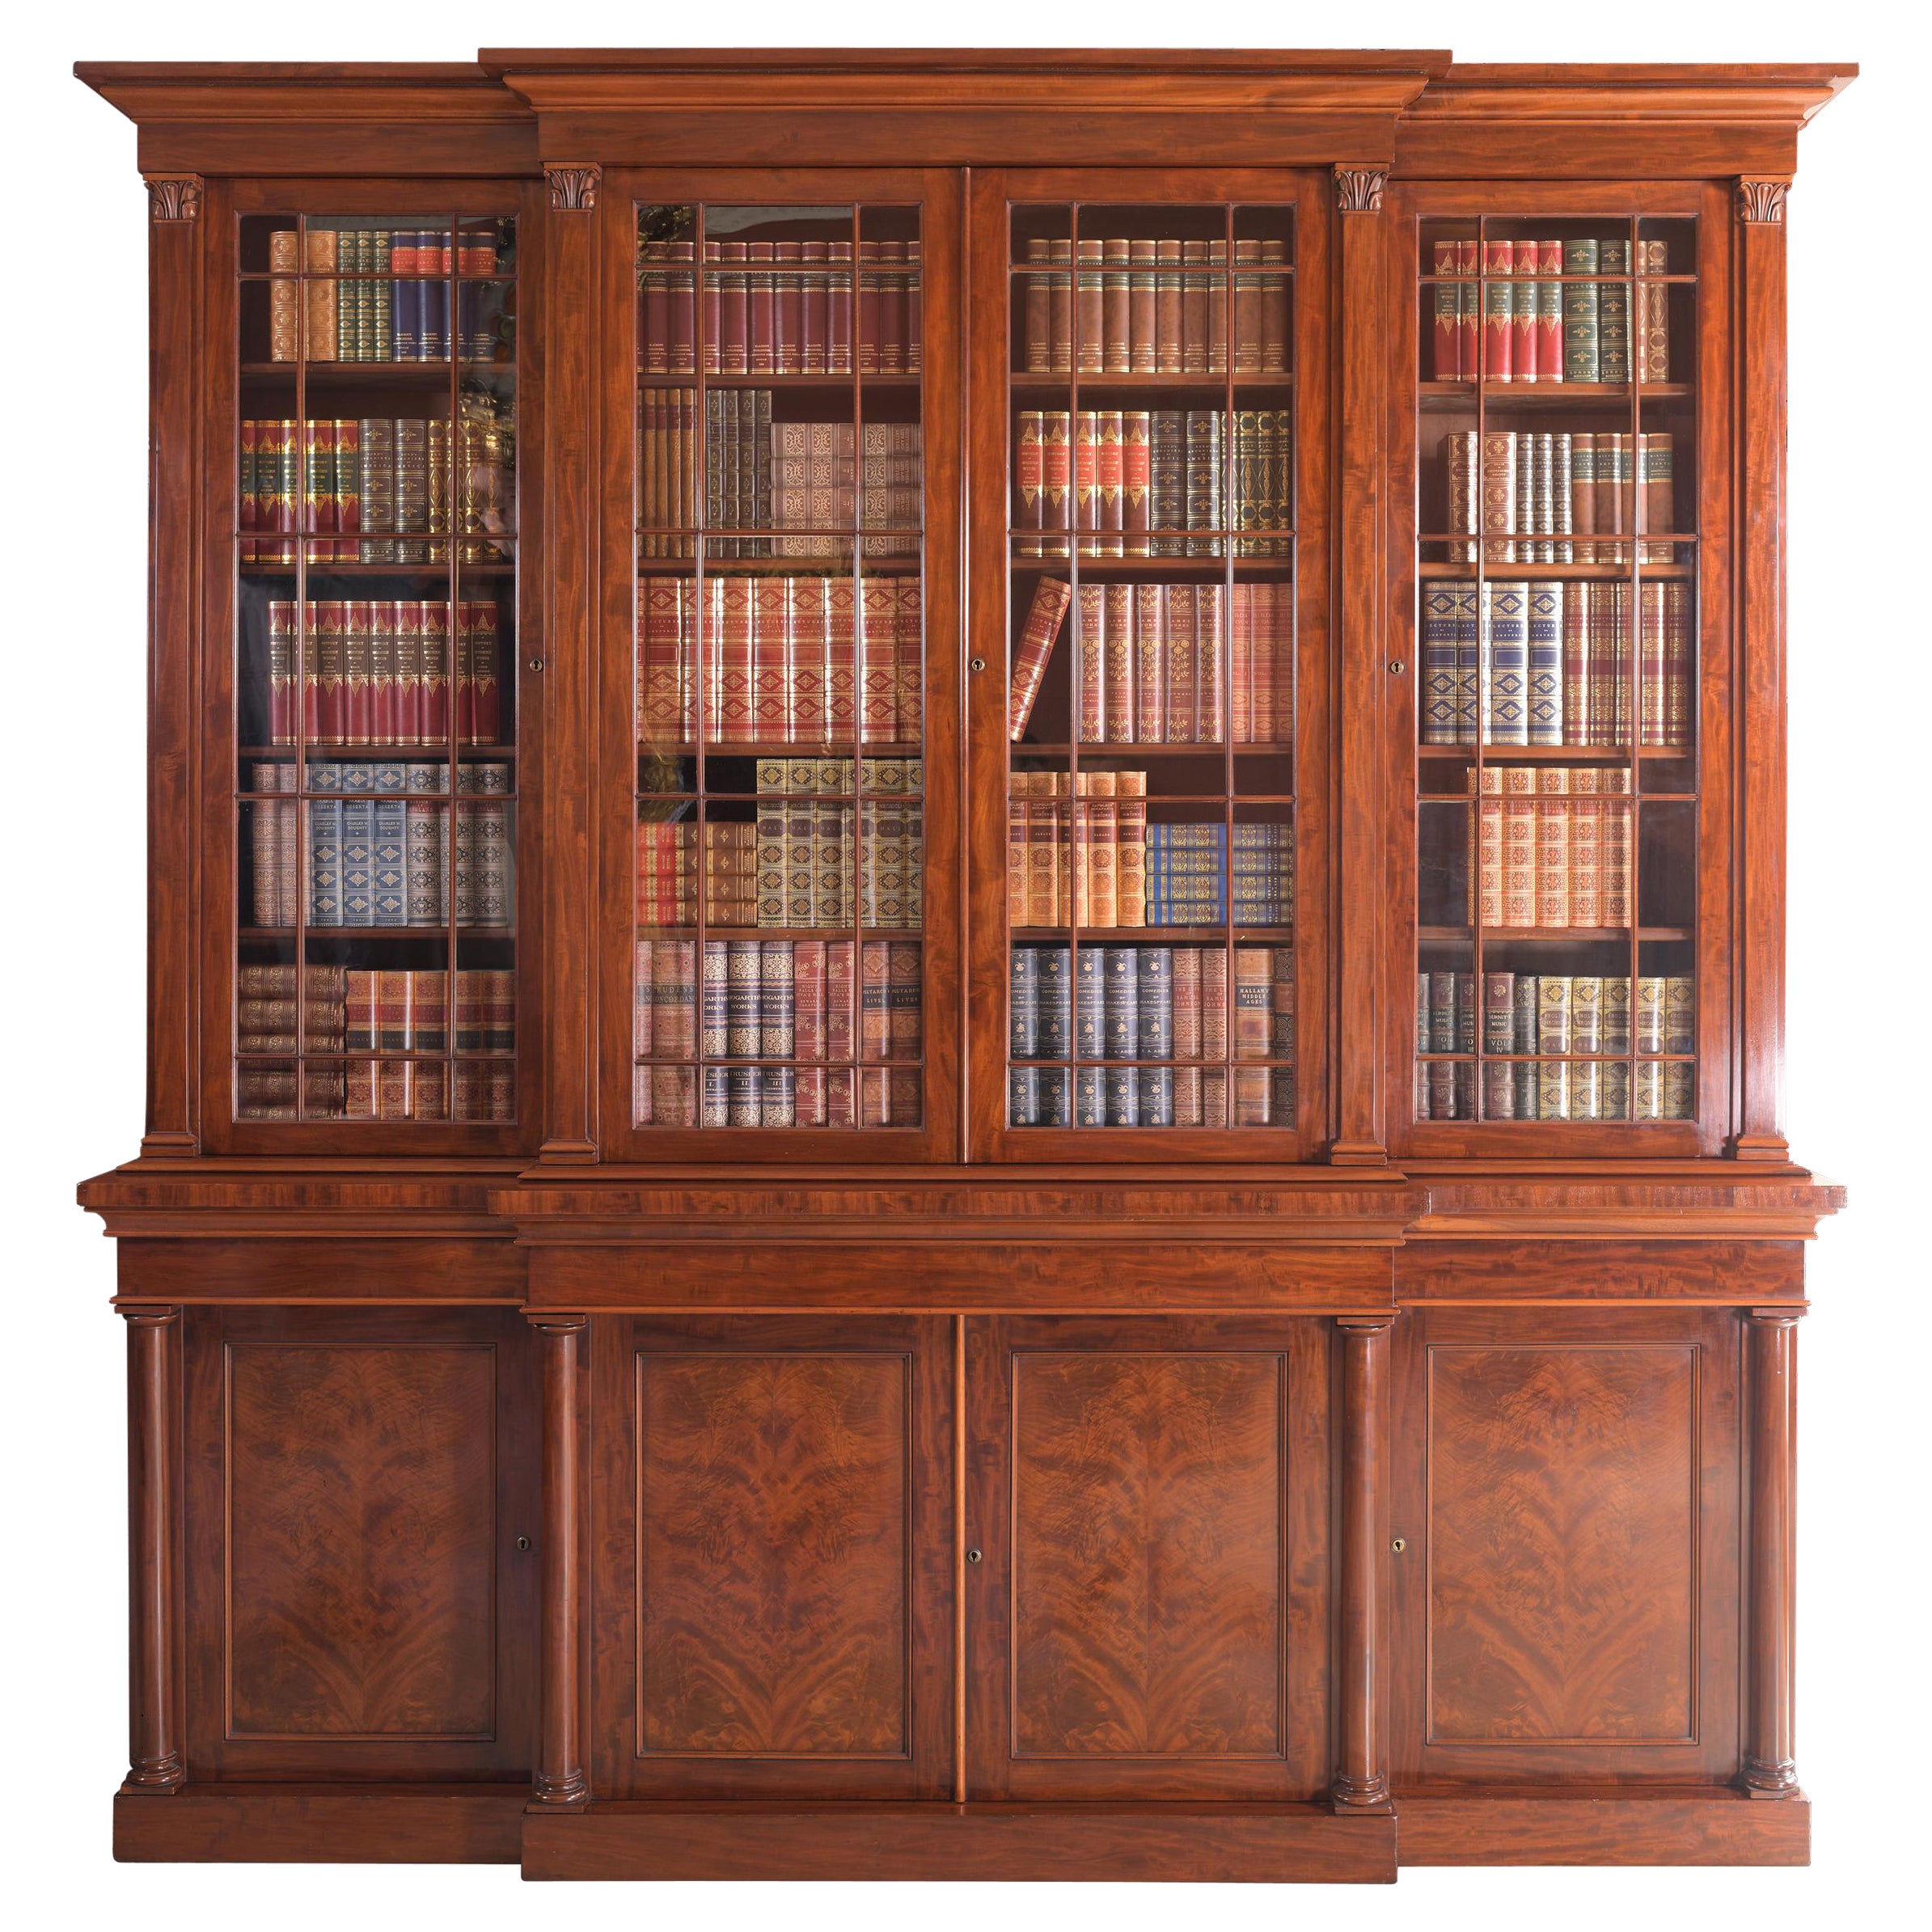 Englisches Regency-Bücherregal mit Breakfront aus dem 19. Jahrhundert, Gillows Lancaster zugeschrieben